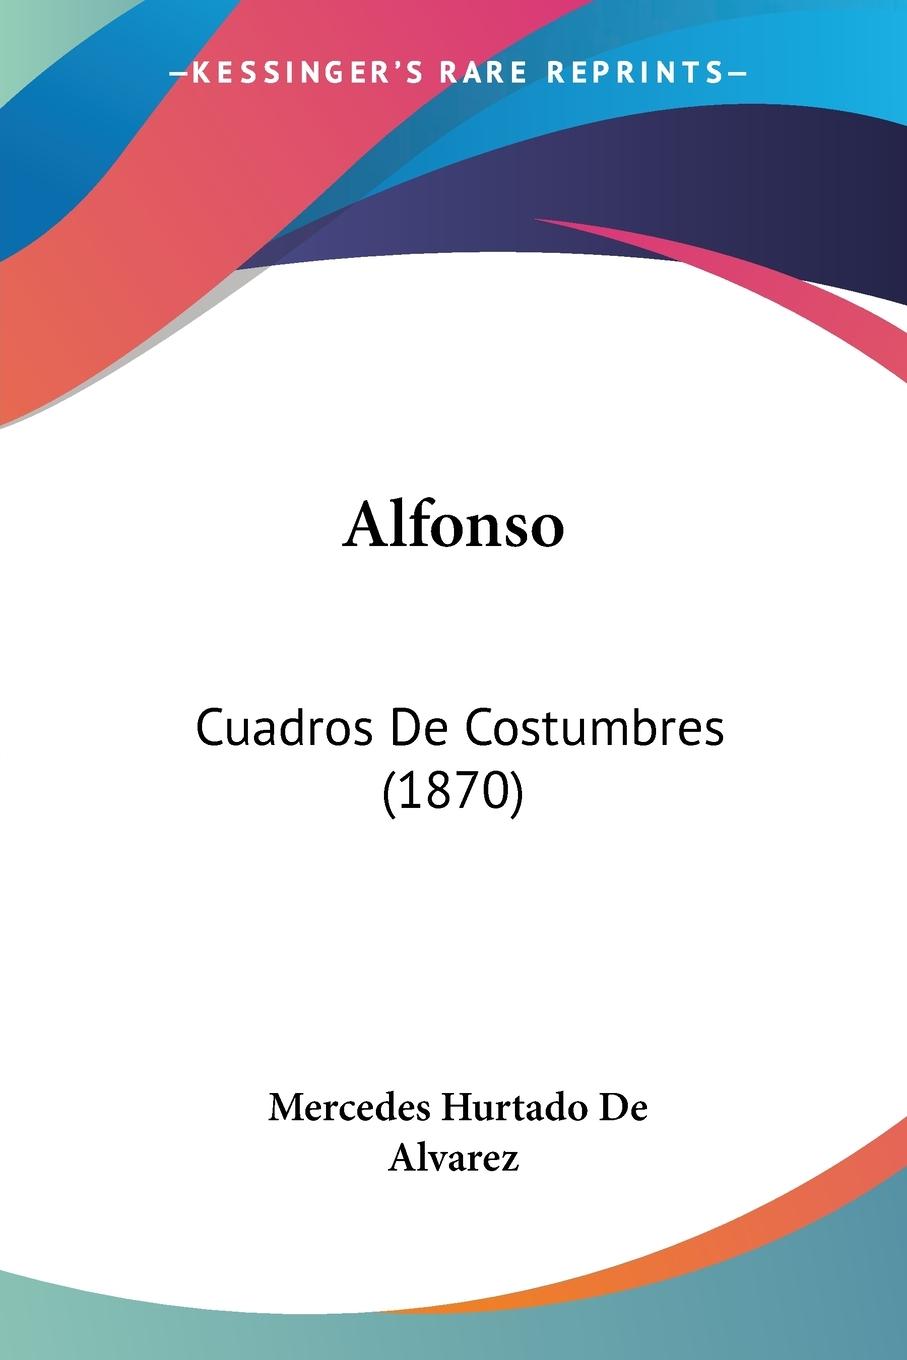 Alfonso - Alvarez, Mercedes Hurtado De